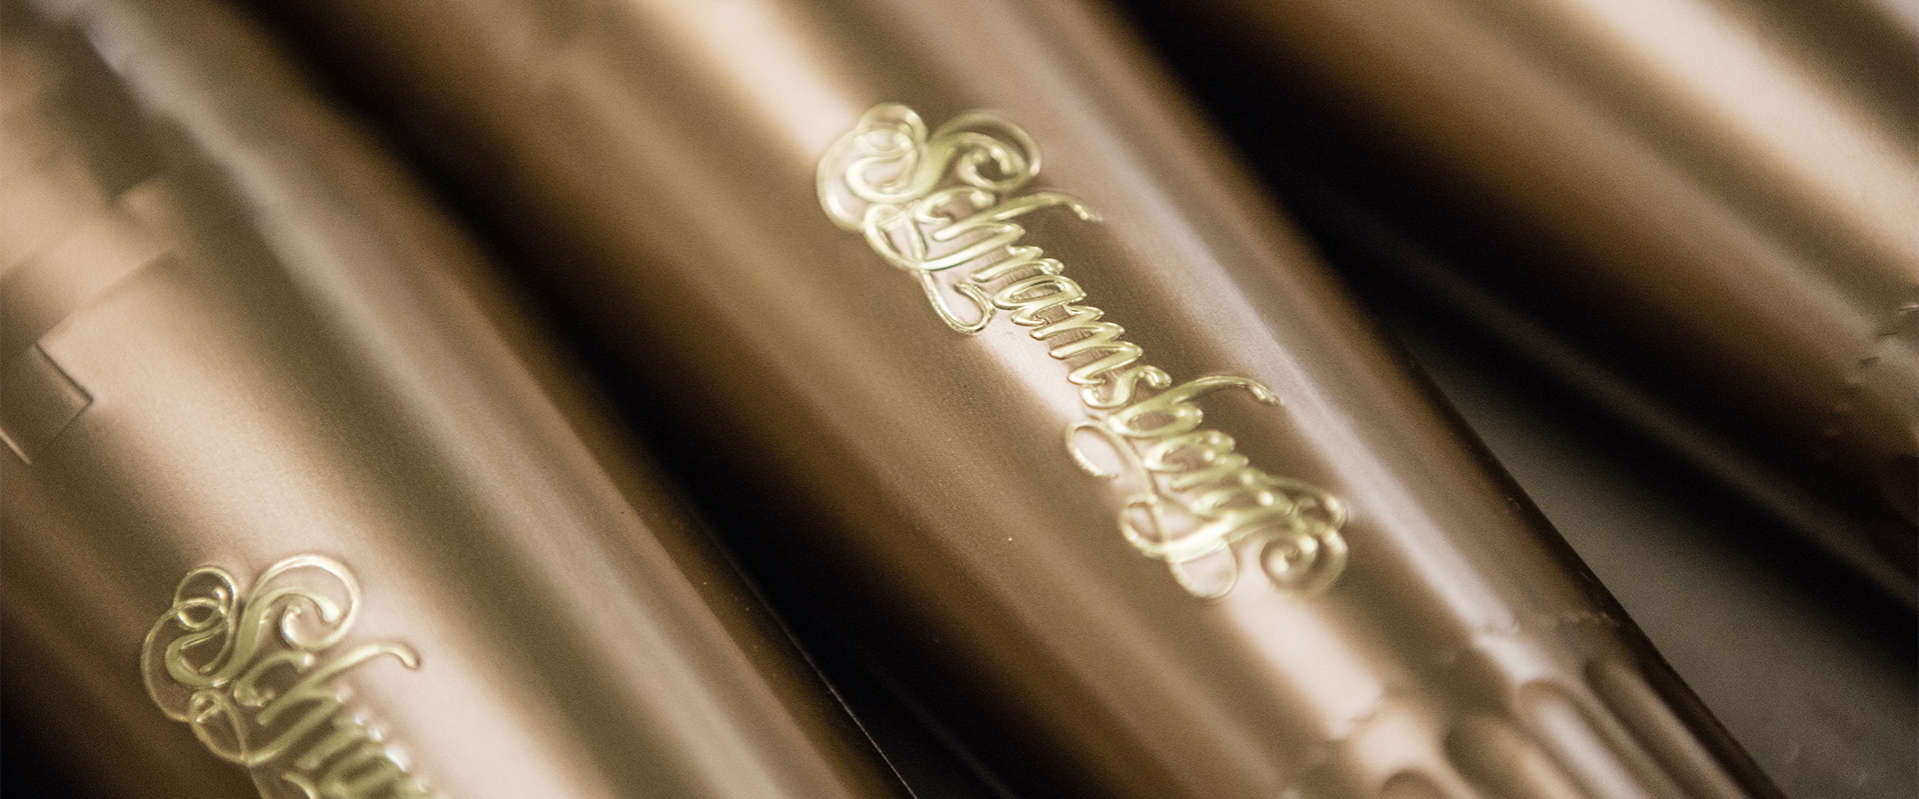 Schramsberg Vineyard gold embossed bottle foils